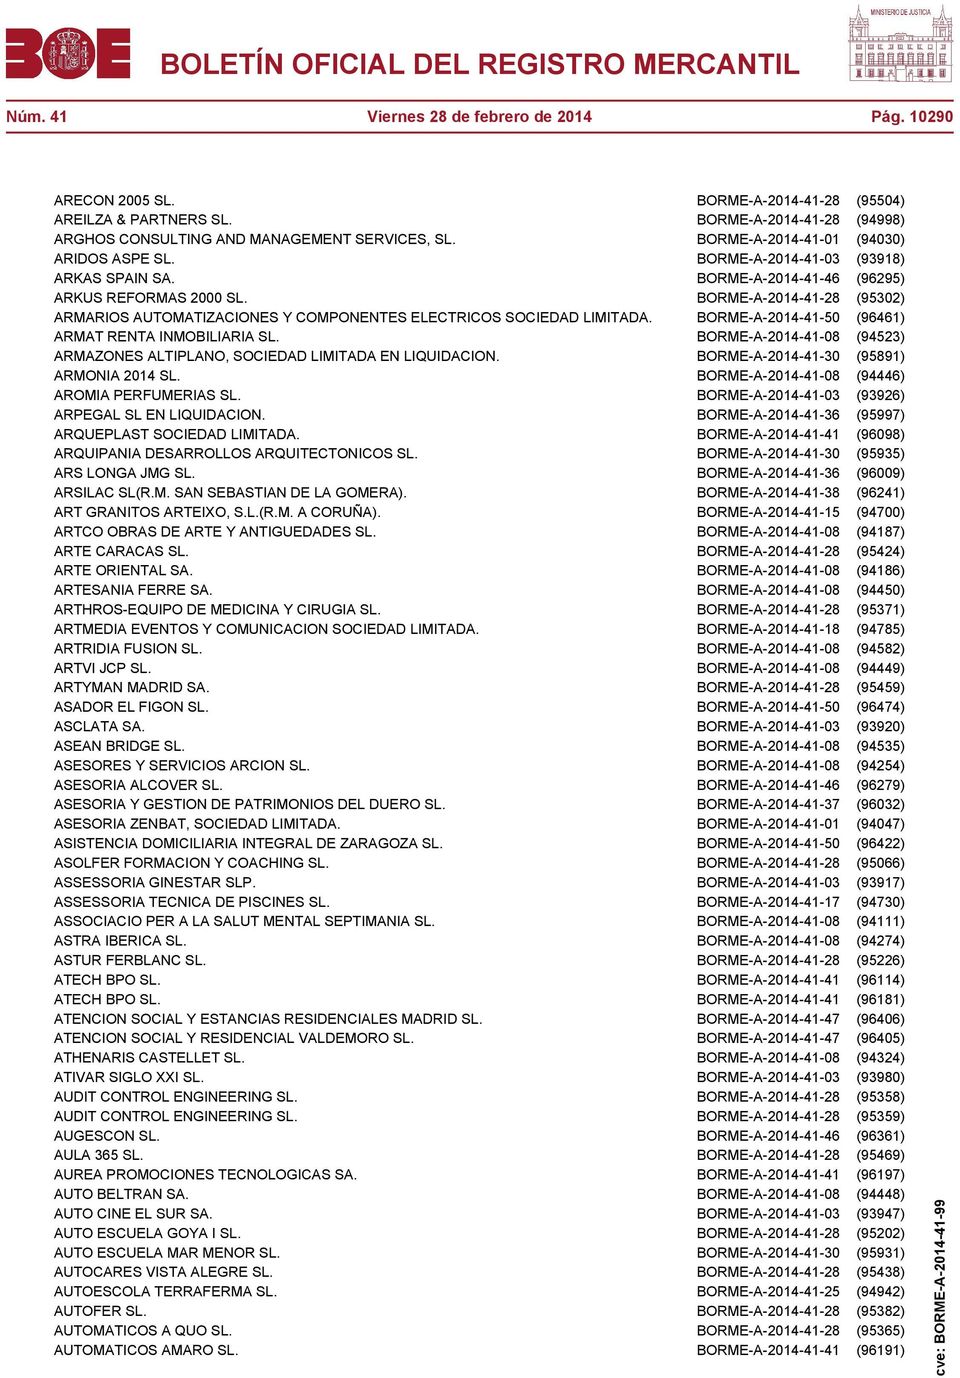 BORME-A-2014-41-28 (95302) ARMARIOS AUTOMATIZACIONES Y COMPONENTES ELECTRICOS SOCIEDAD LIMITADA. BORME-A-2014-41-50 (96461) ARMAT RENTA INMOBILIARIA SL.